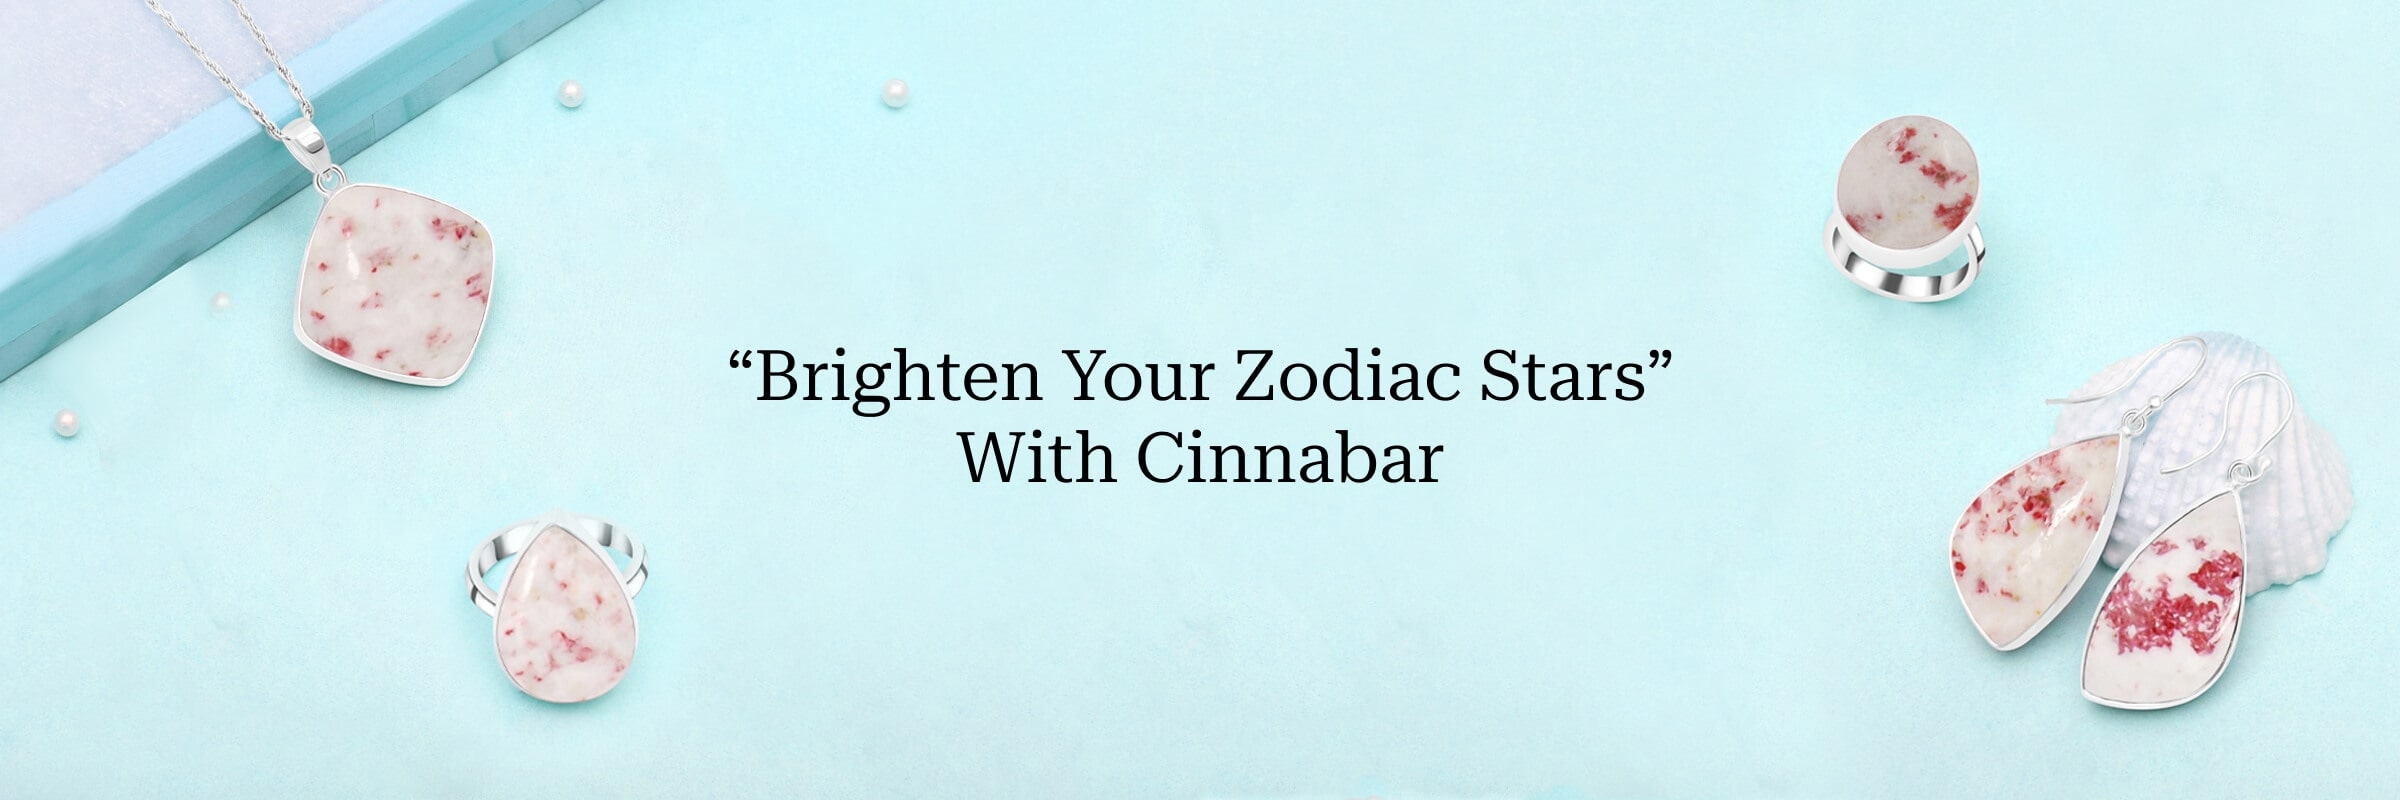 Cinnabar zodiac sign